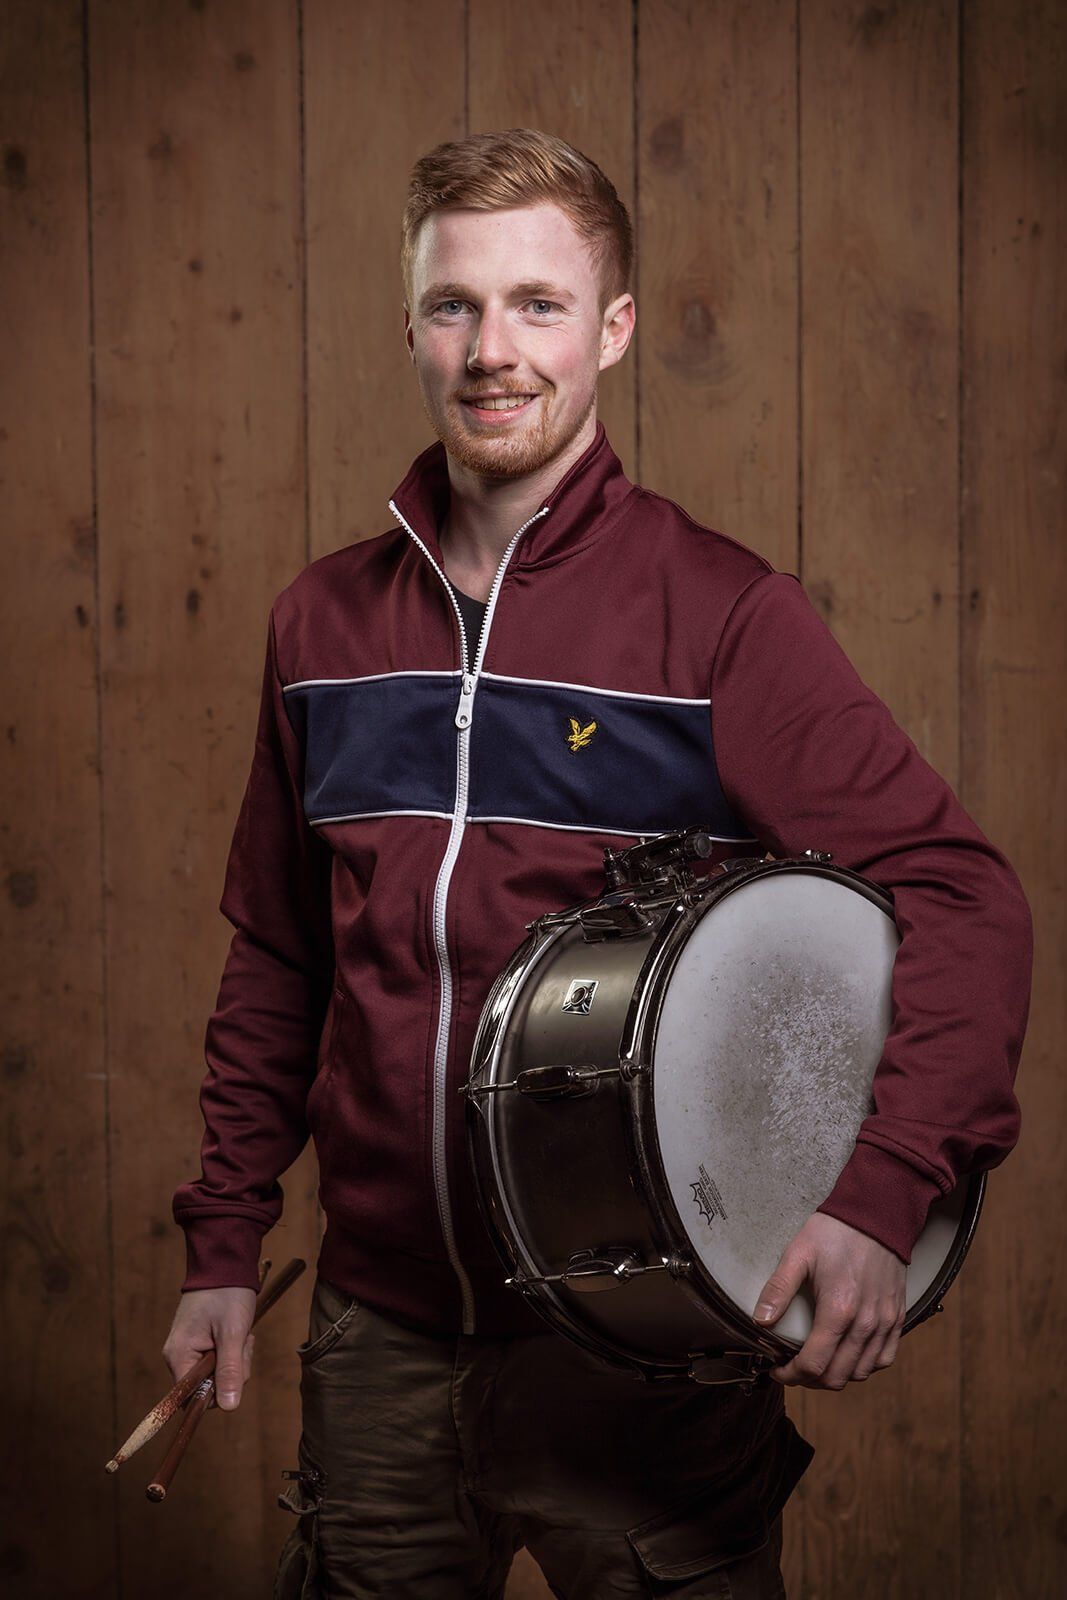 Portrait ab Hüfte von Schlagzeuger Christoph mit Trommel vor Holzwand